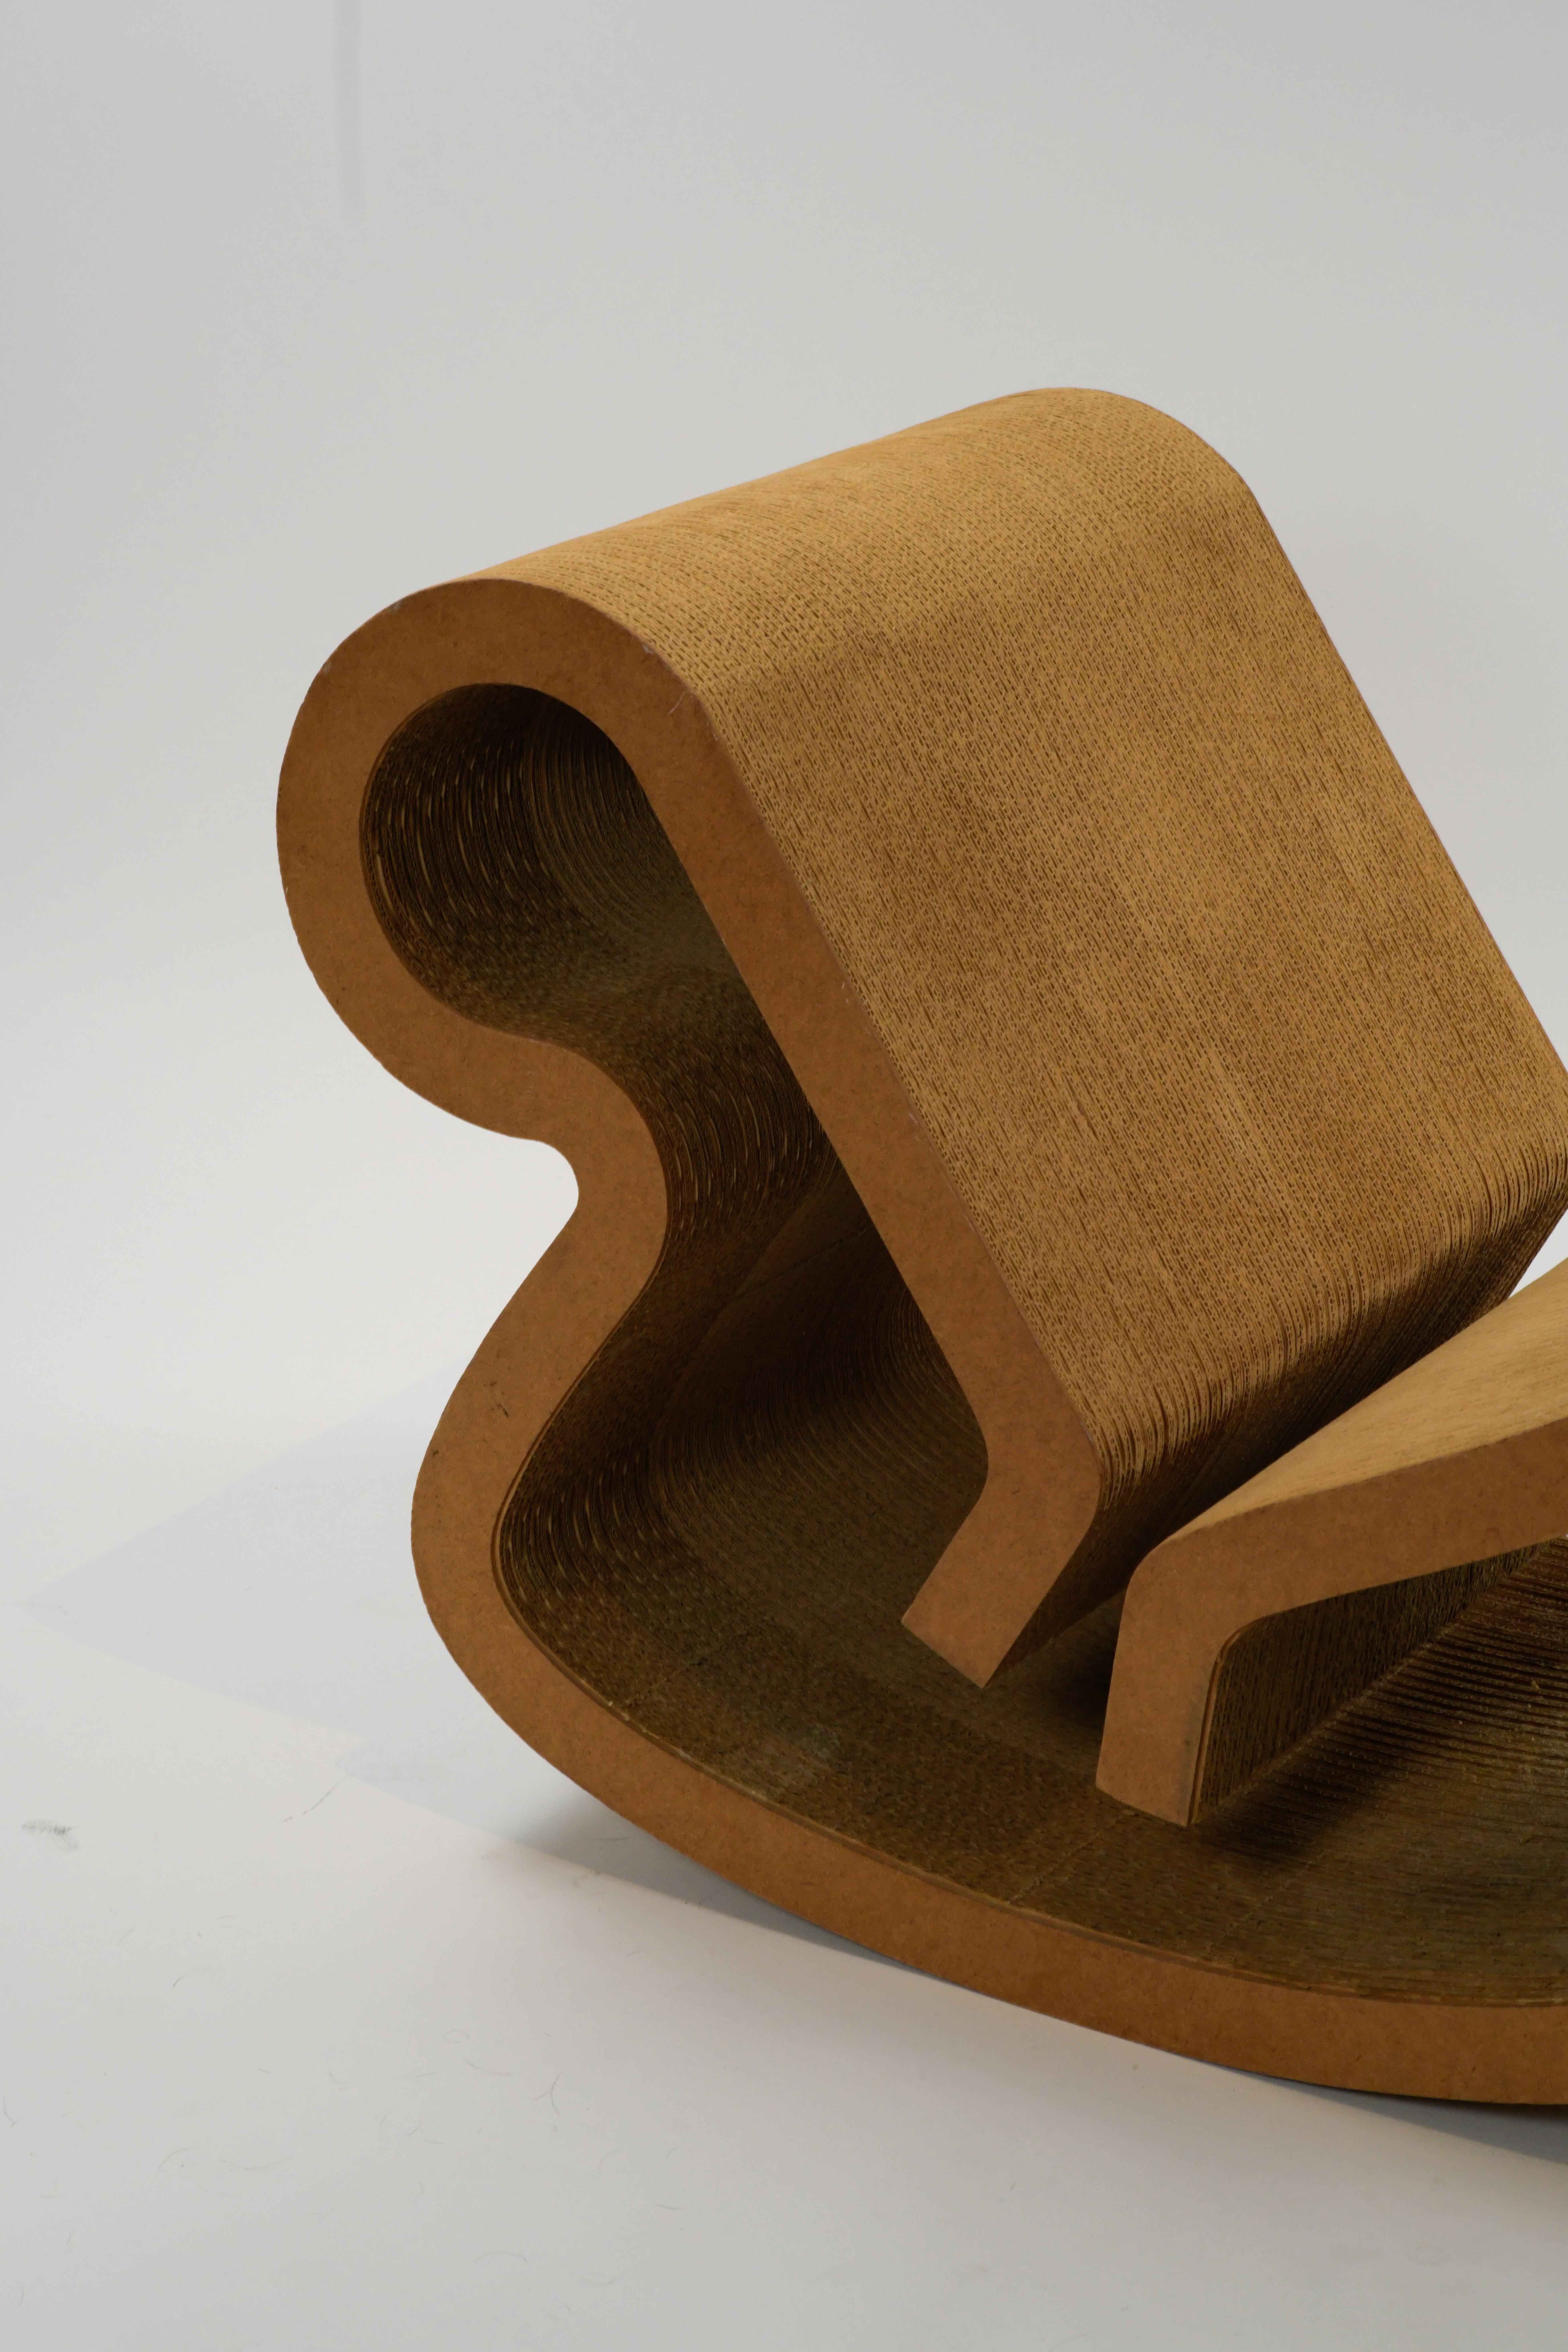 Chaise longue à bascule 'Contour' iconique des années 1970, réalisée par le célèbre architecte Frank Gehry pour Easy Edges, Inc. Cette magnifique chaise de salon patinée est faite de carton ondulé laminé et de masonite et est en très bon état compte